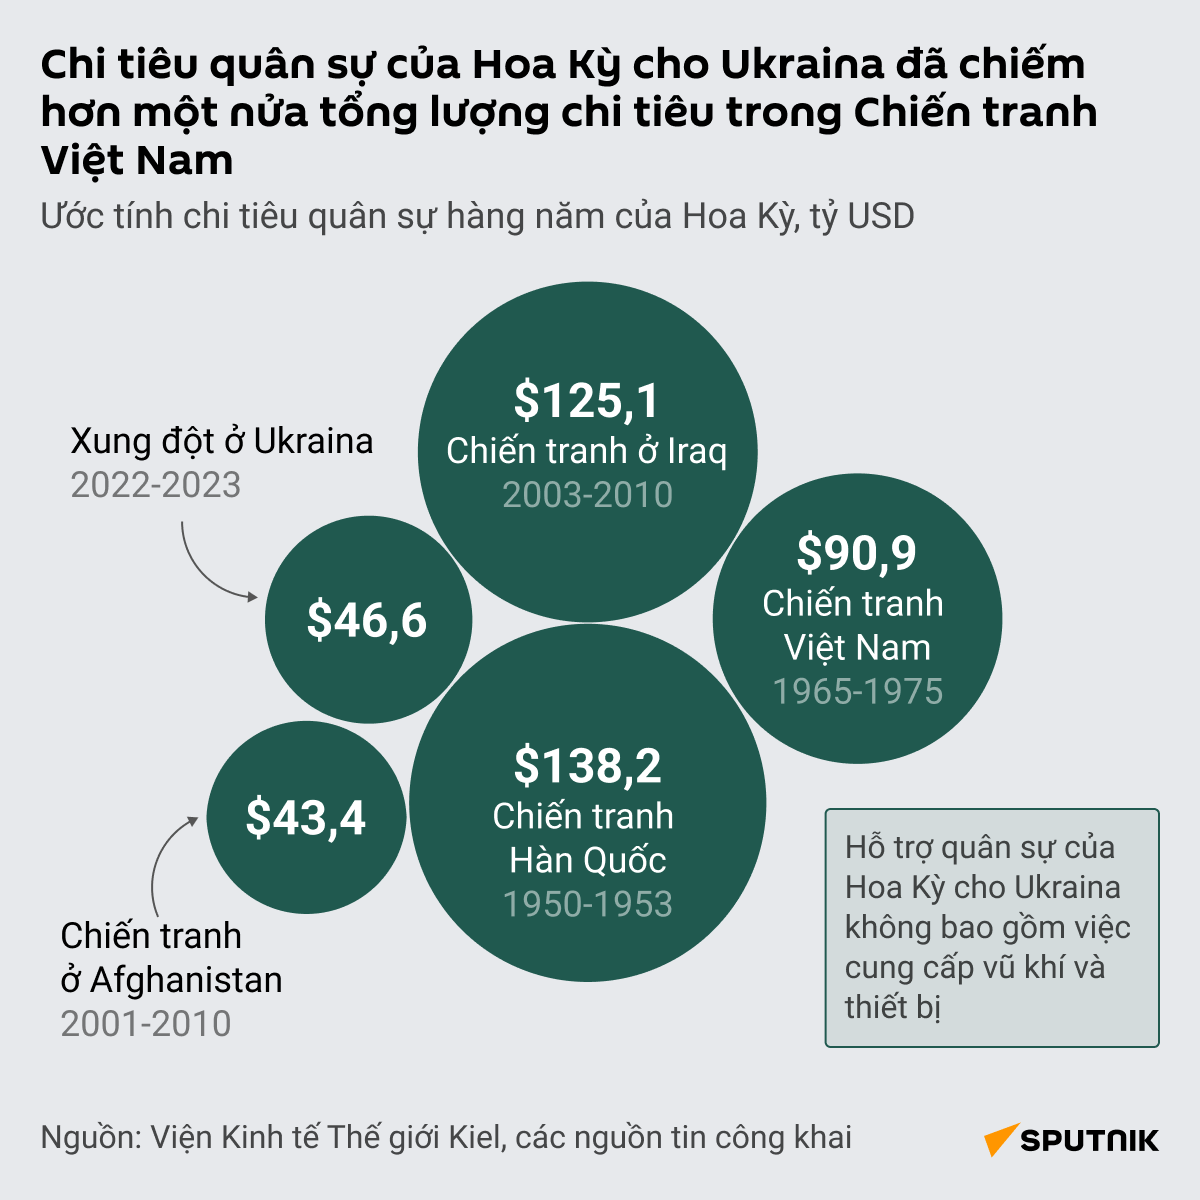 Chi tiêu quân sự của Hoa Kỳ cho Ukraina đã là hơn một nửa tổng tốn phí cho Chiến tranh Việt Nam - Sputnik Việt Nam